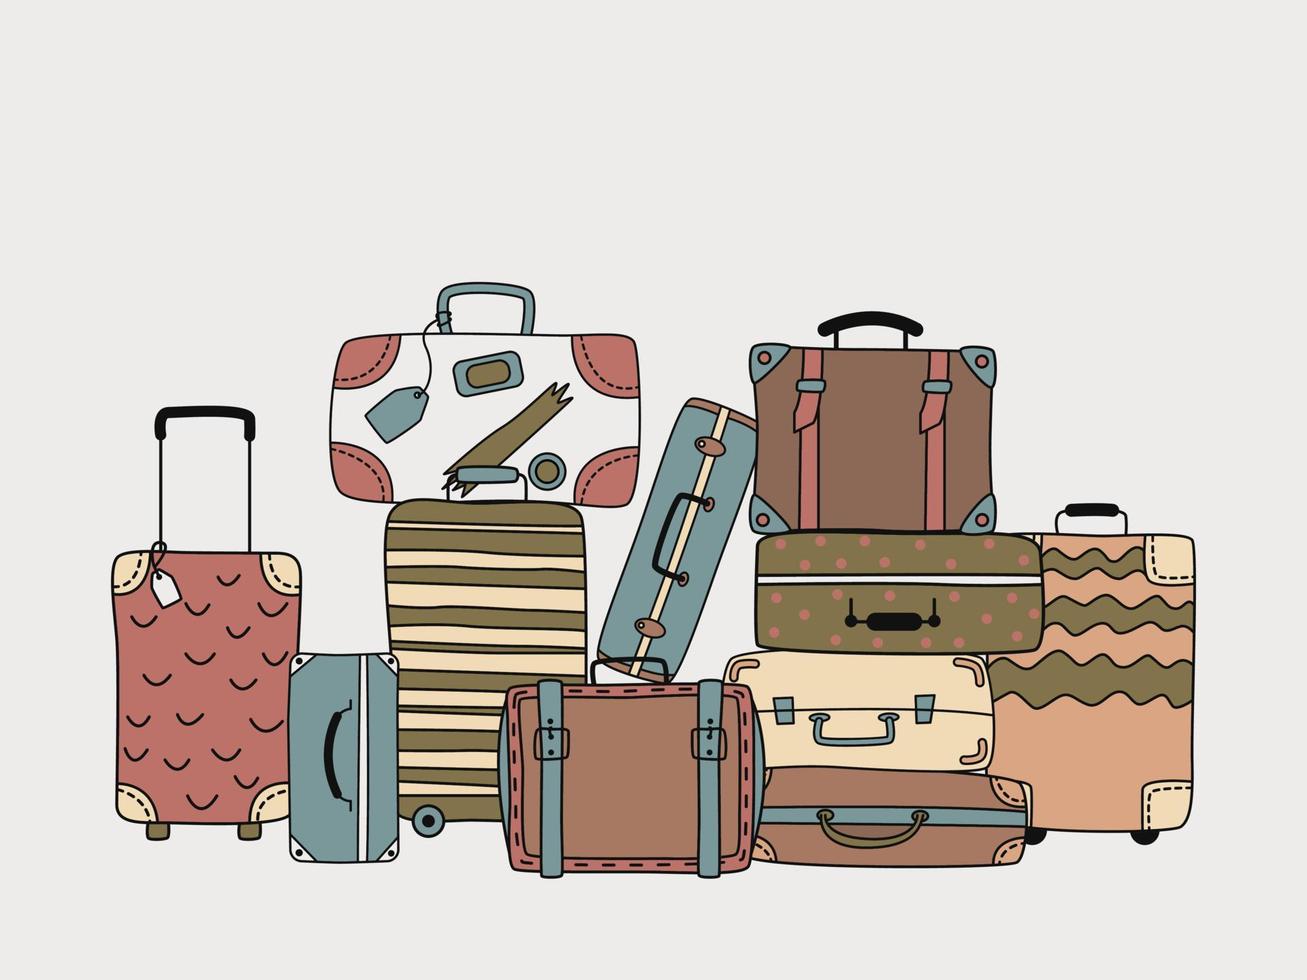 valises de voyage. illustration vectorielle plane dessinée à la main. la notion de voyage vecteur